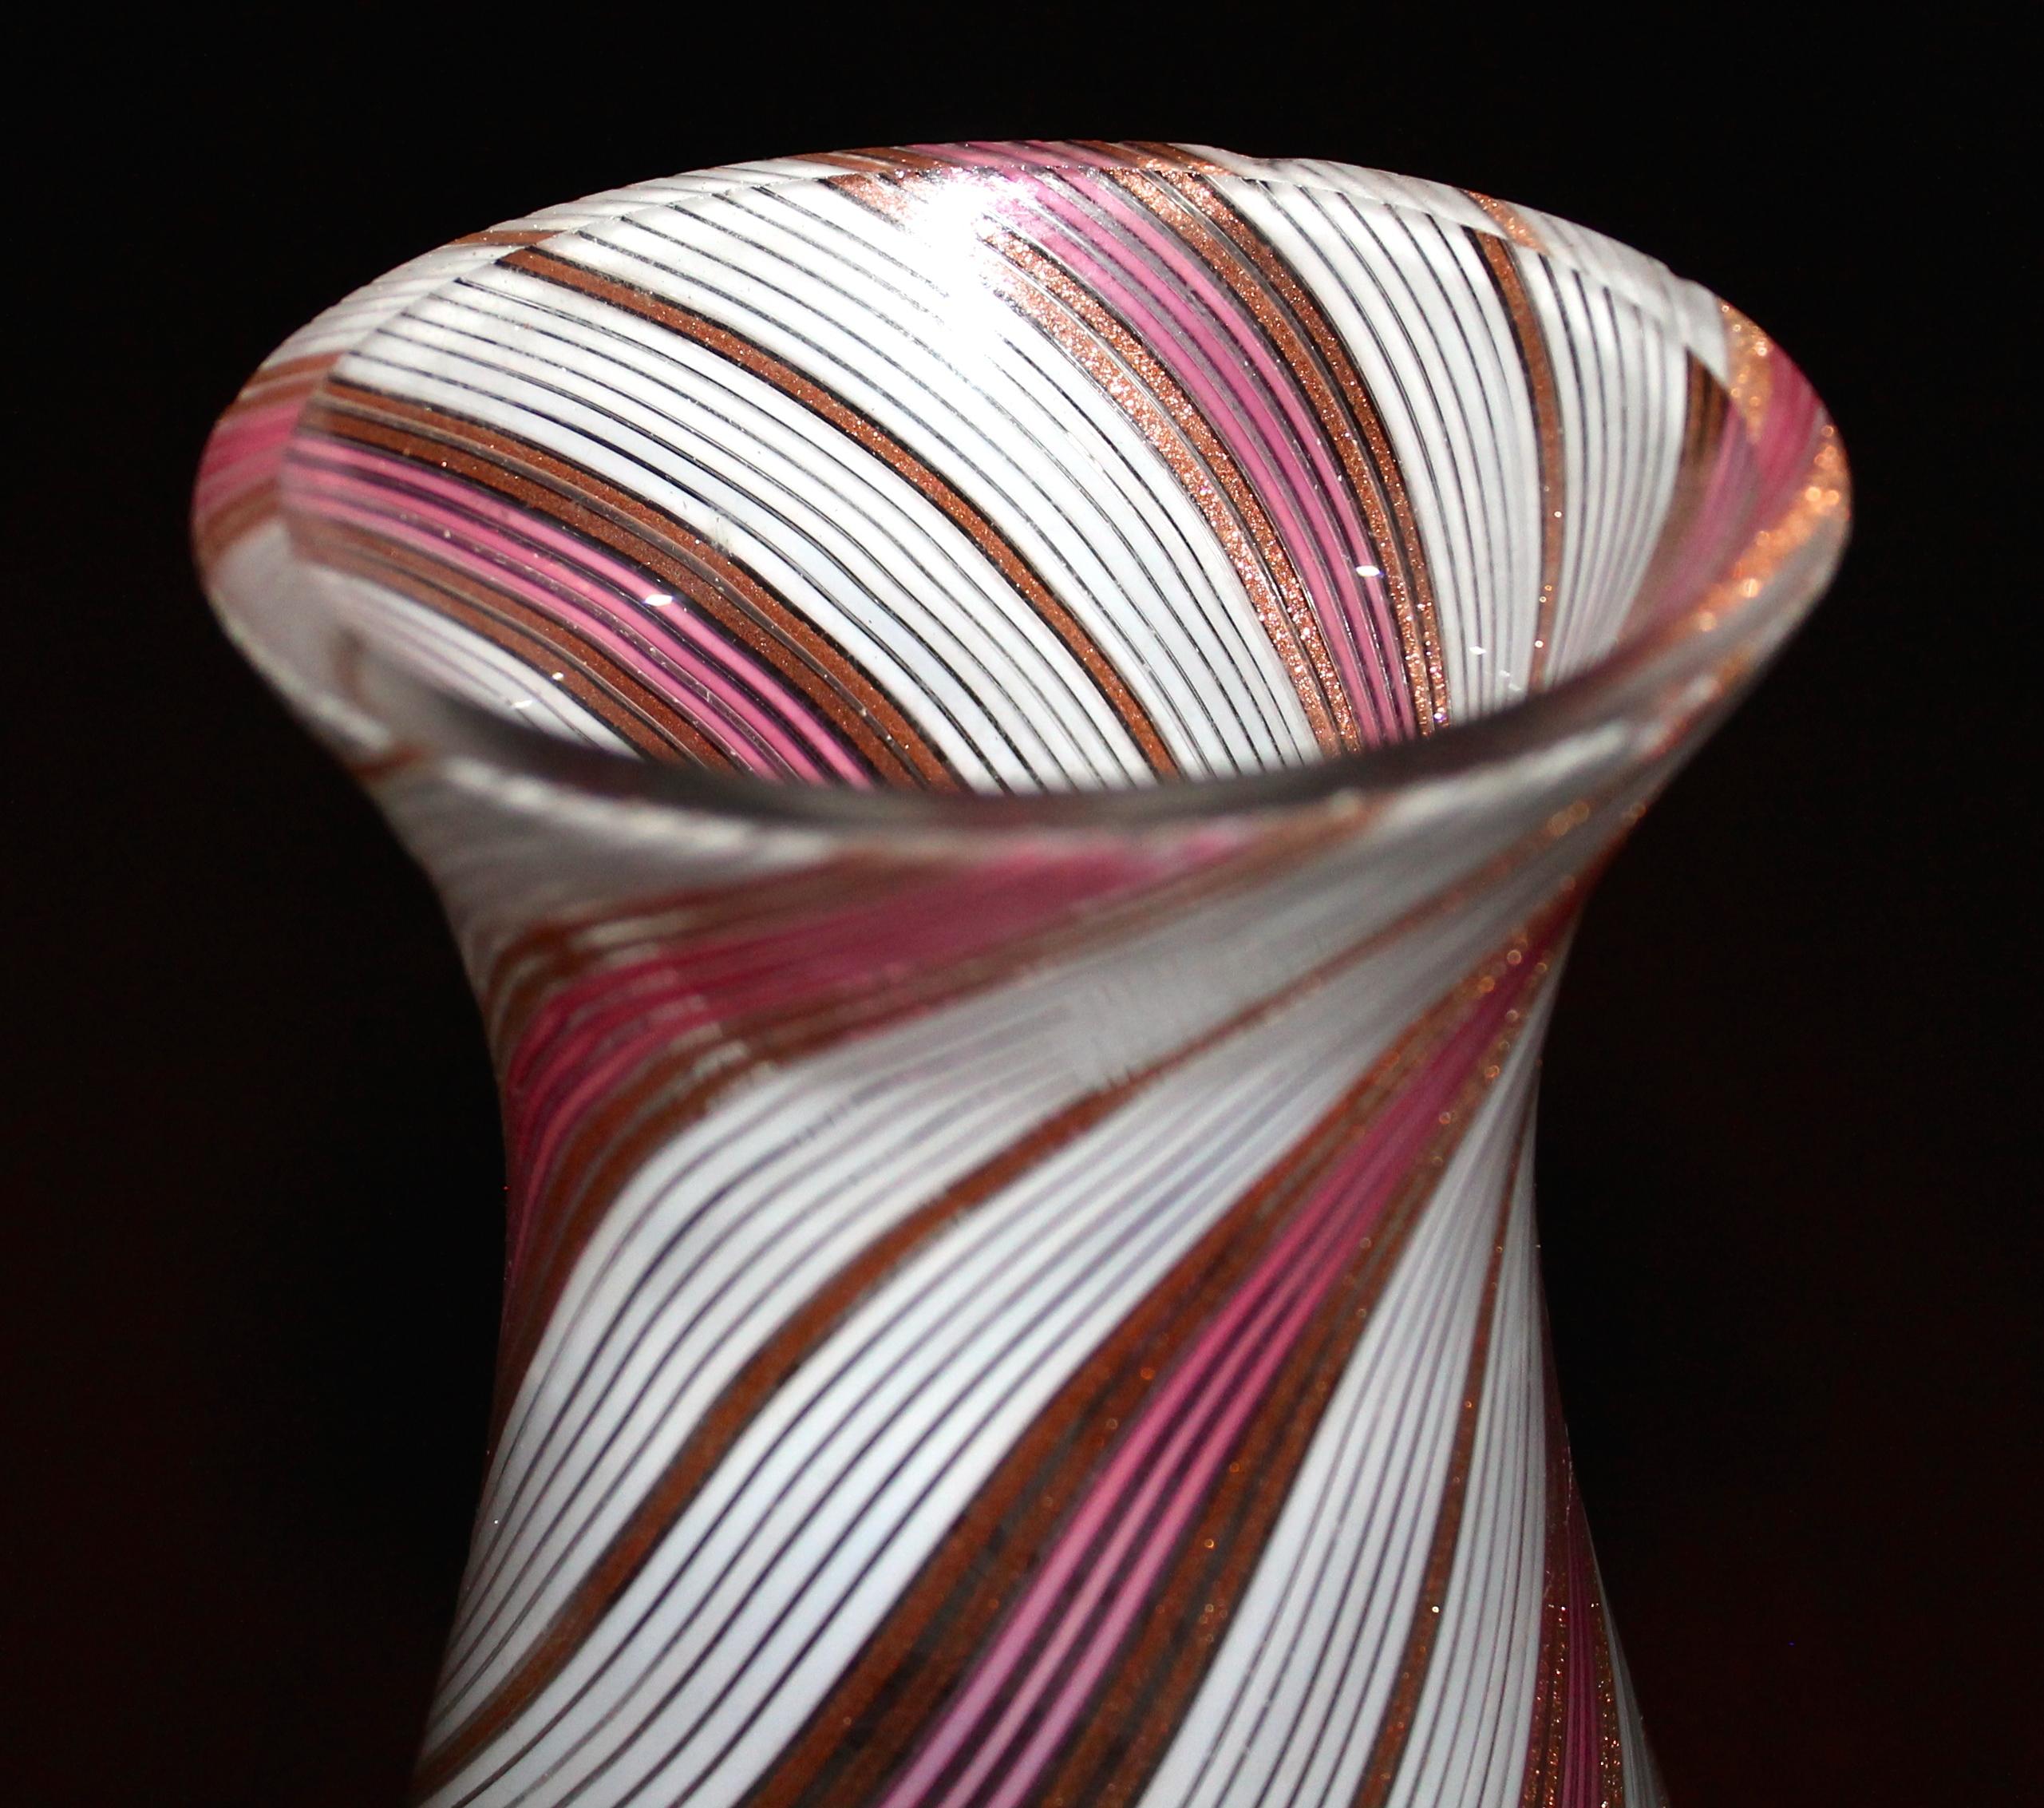 Nur die Vase aus Glas, die sich leicht in eine Lampe verwandeln lässt. Filigran in Rosa und Gold. Modell Nr. 6038 in den Archiven von Aureliano Toso. Mit einem Rest eines alten Papieretiketts. Bohrung im Boden.